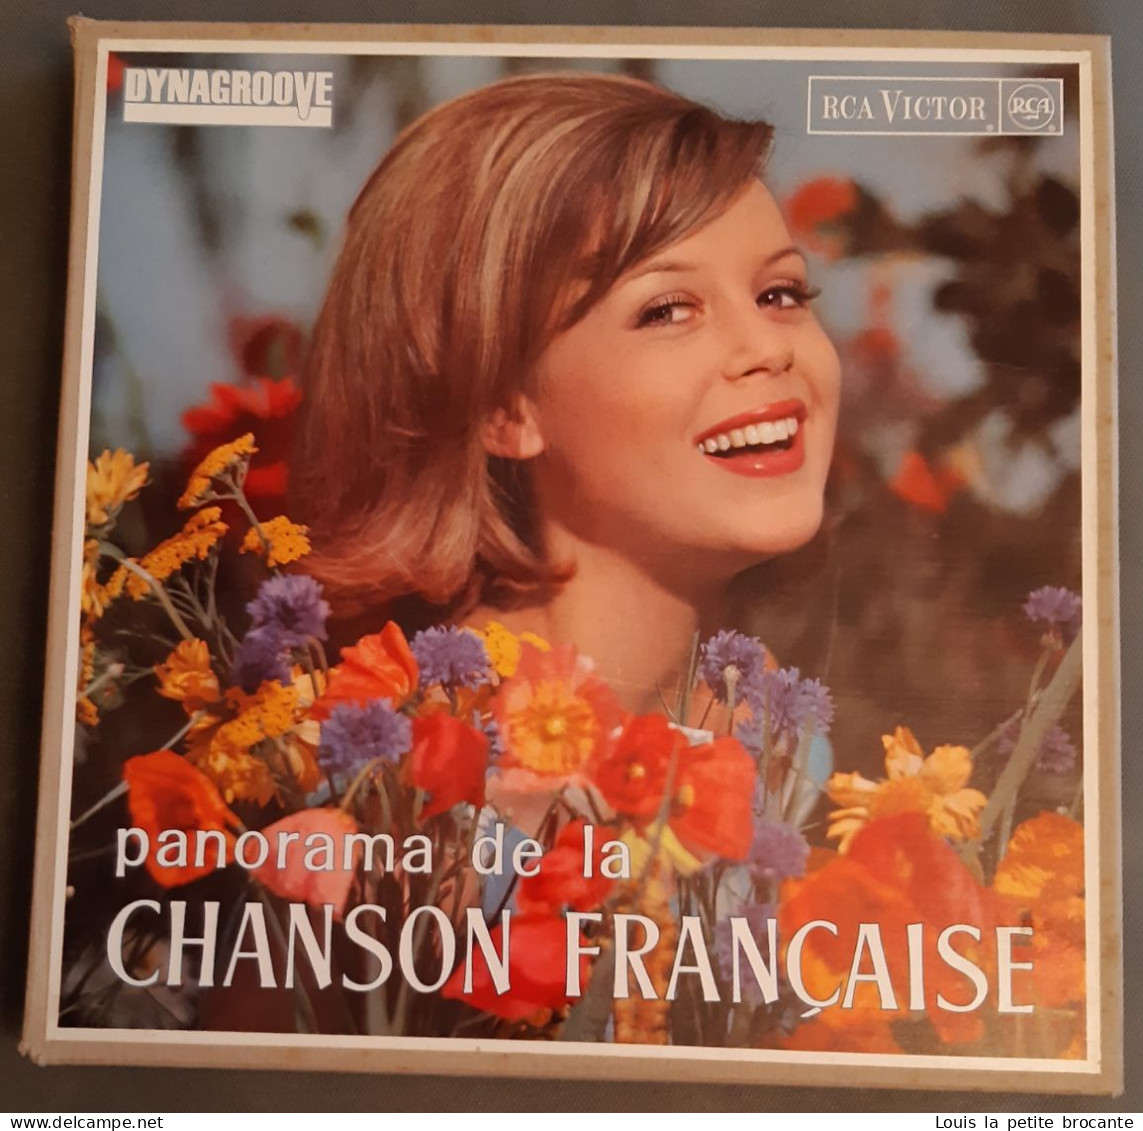 Coffret De 10 Disques Vinyles, PANORAMA DE LA CHANSON FRANCAISE - DINAGROOVE - RCA VICTOR 1964, 1 Chanson Rayée - Collezioni